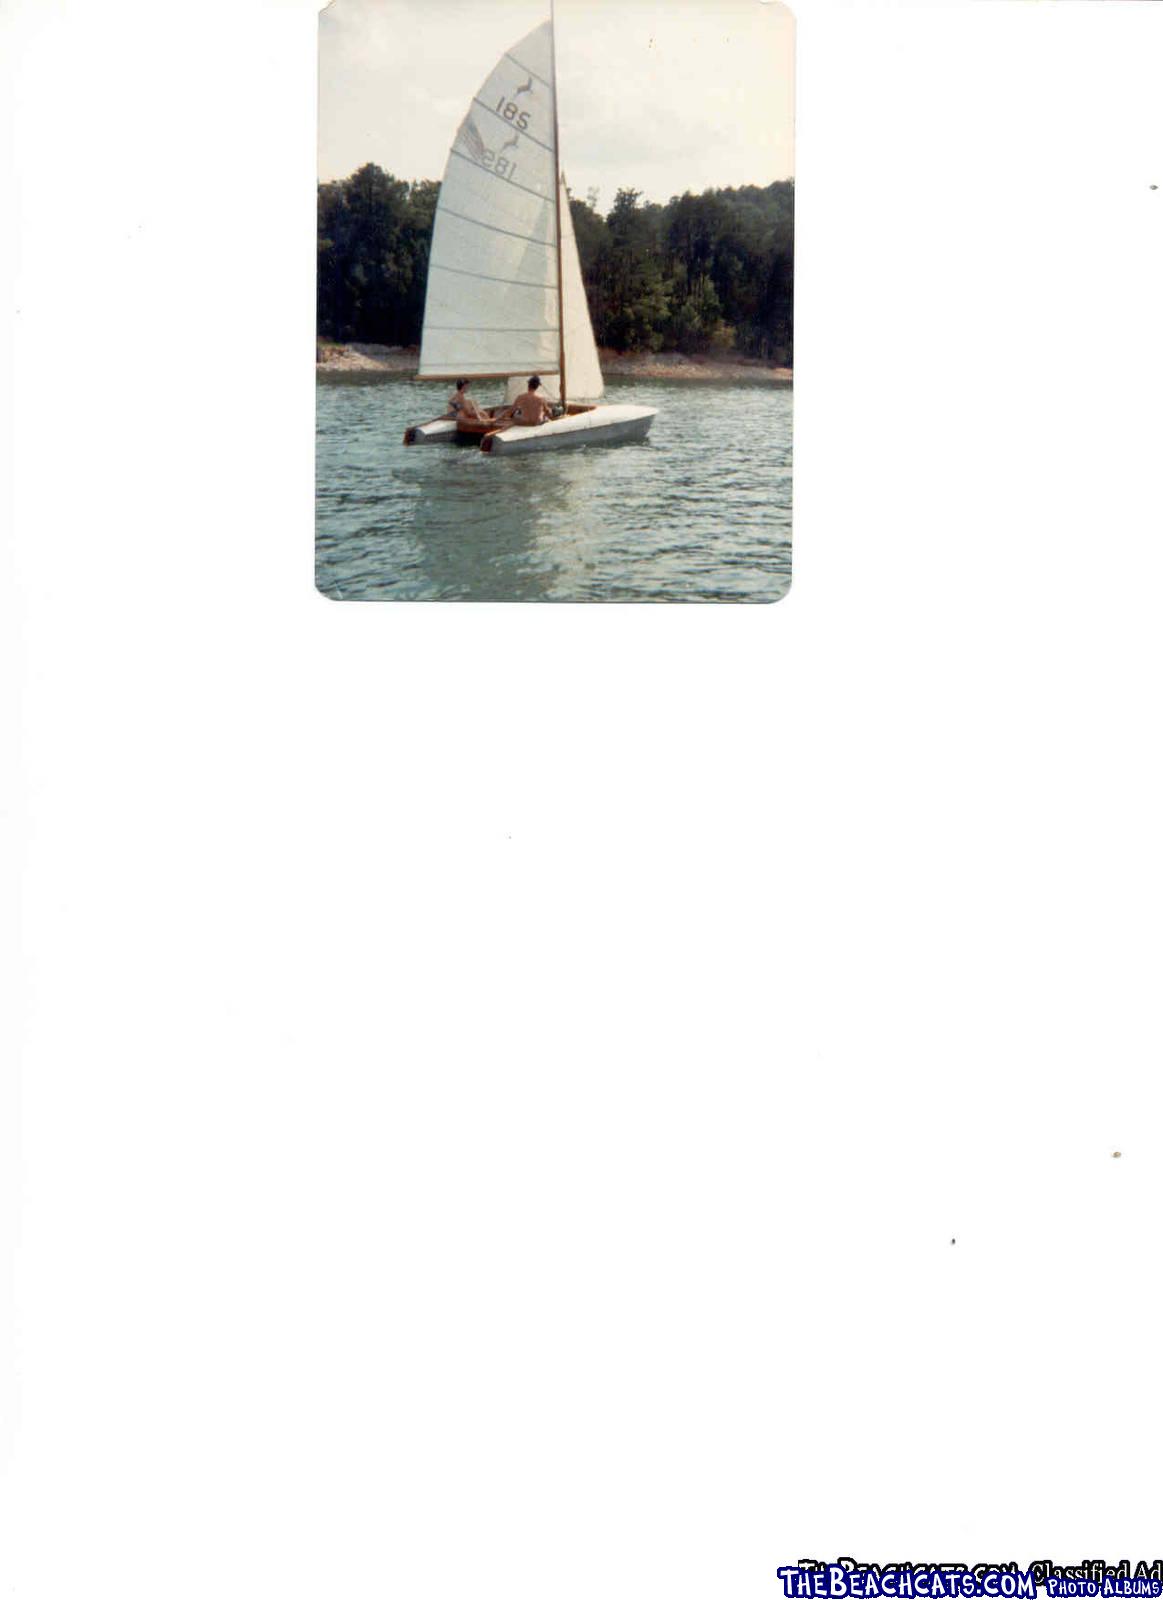 Jumpahead Catamaran